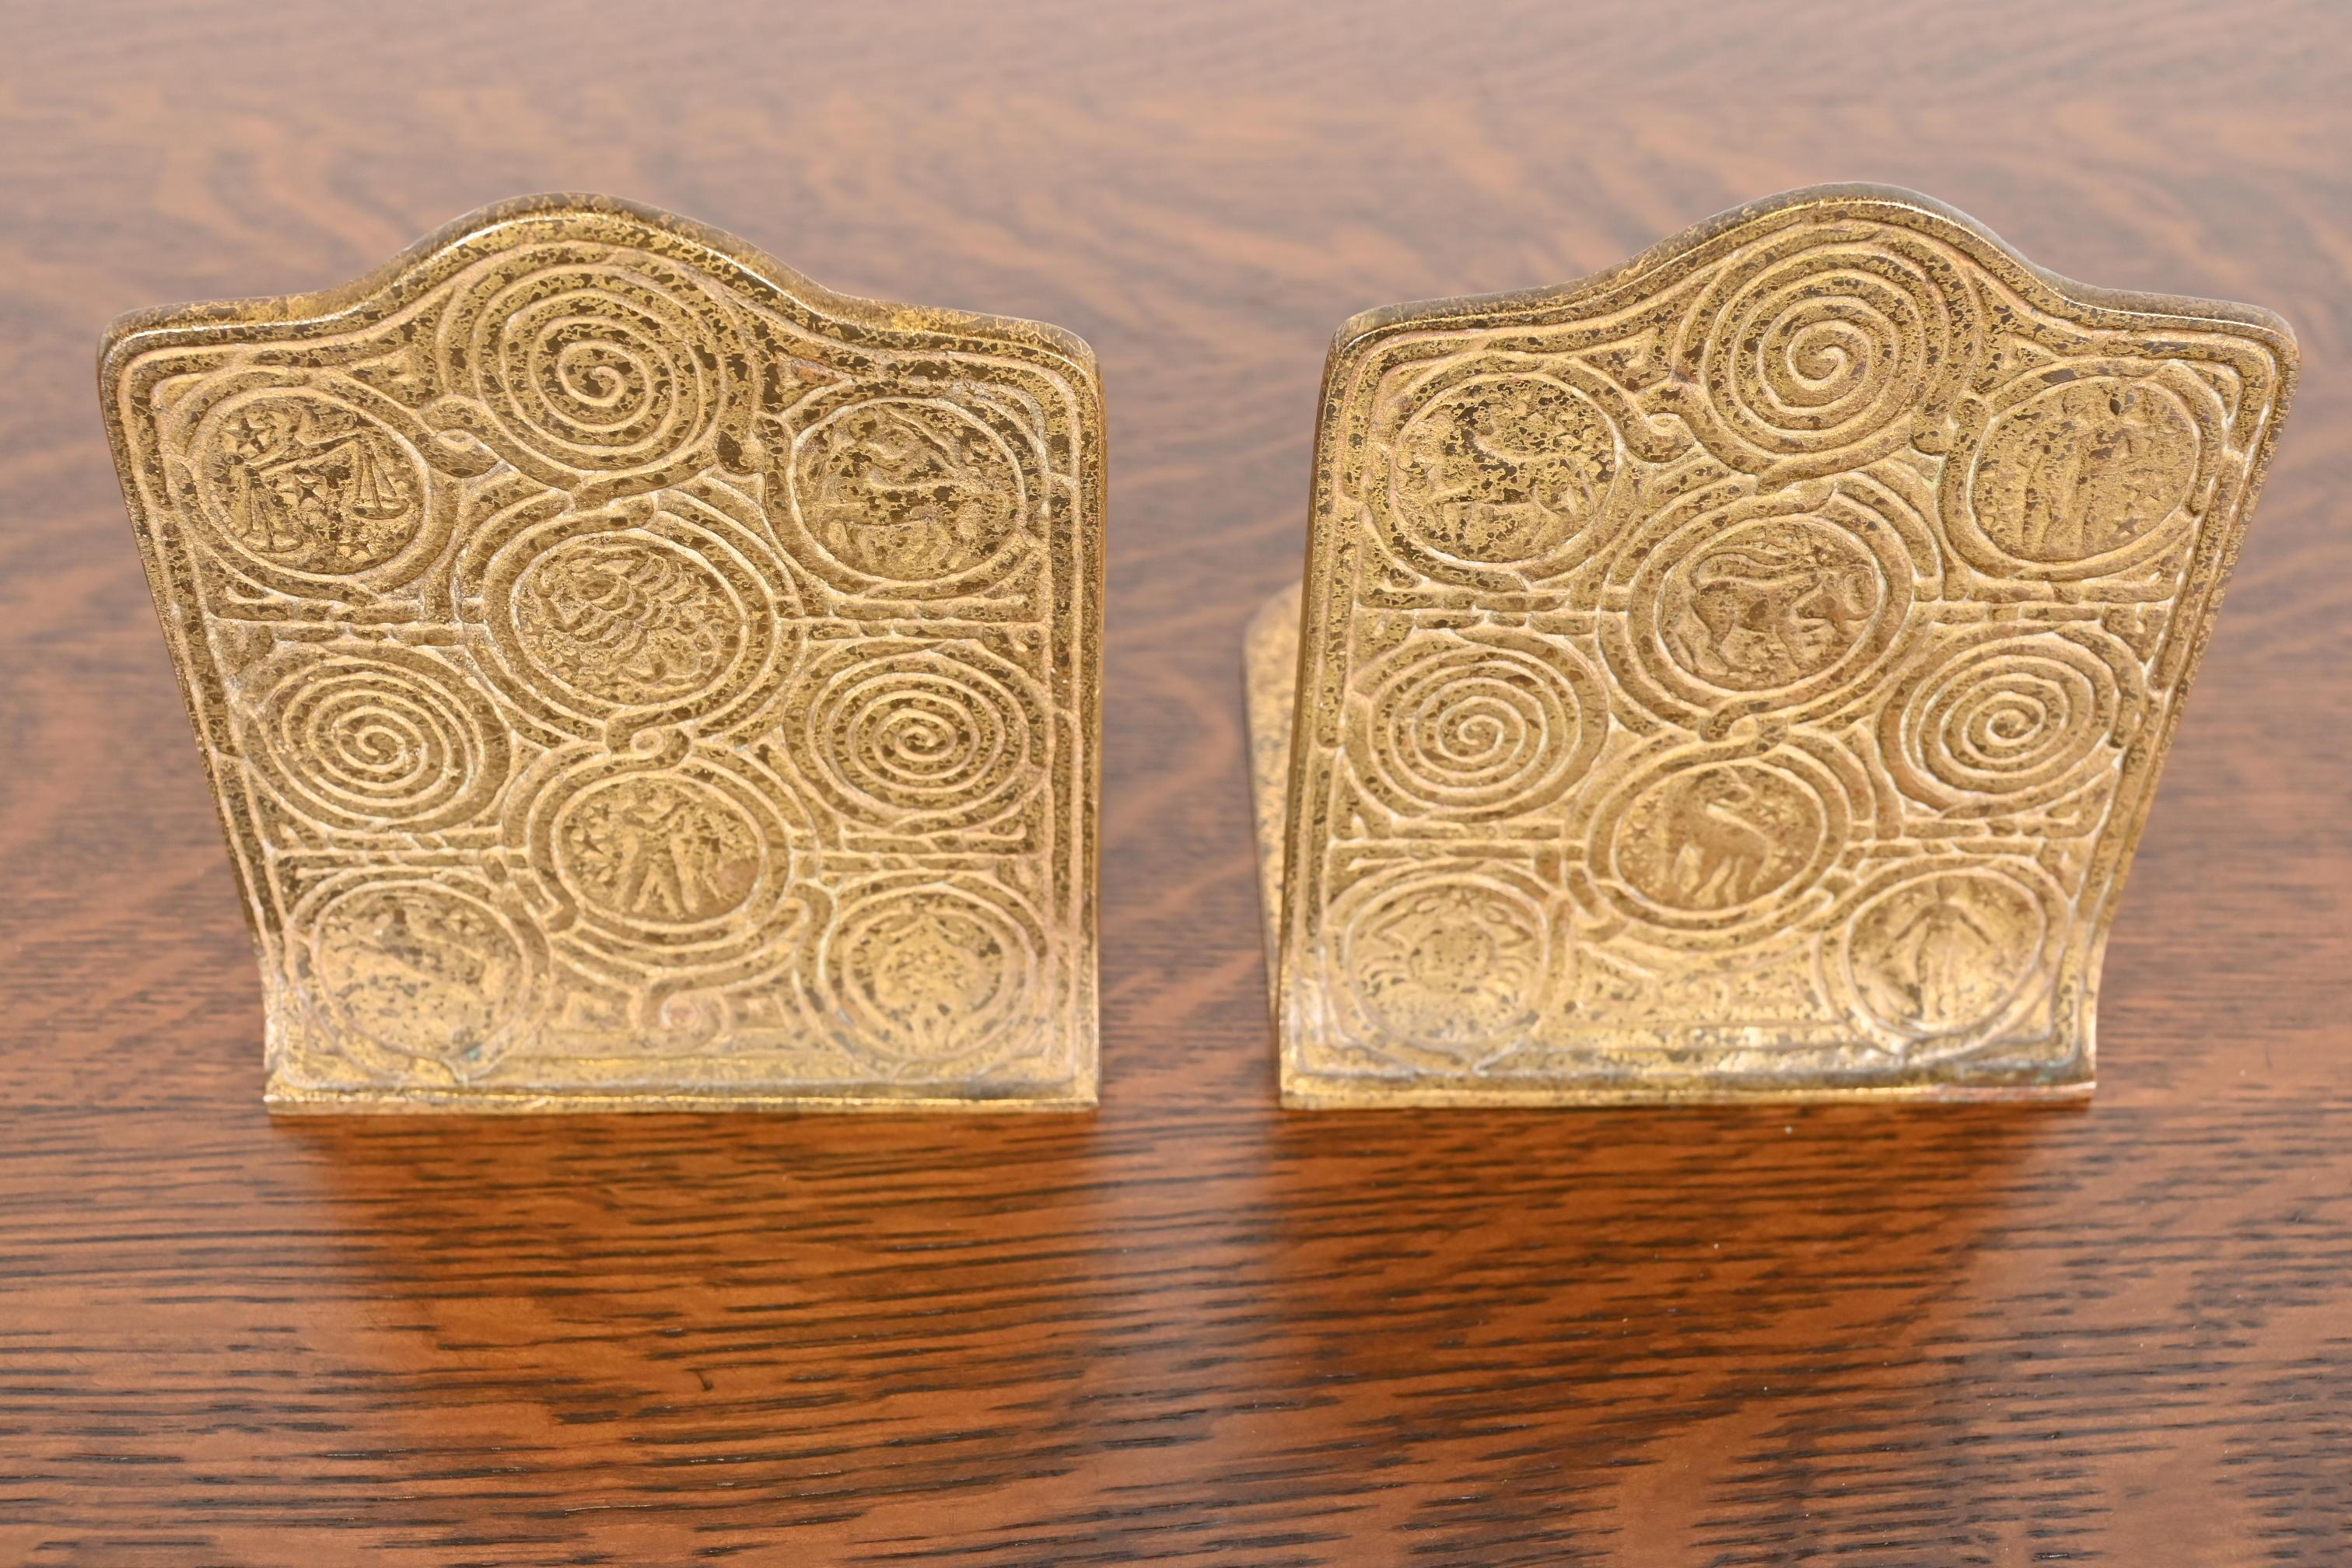 Magnifique paire de serre-livres en bronze doré d'époque Arts & Crafts ou Art Deco, ornés de motifs du Zodiac.

Par Tiffany Studios

New York, États-Unis, début du XXe siècle

Chacune mesure : 5 